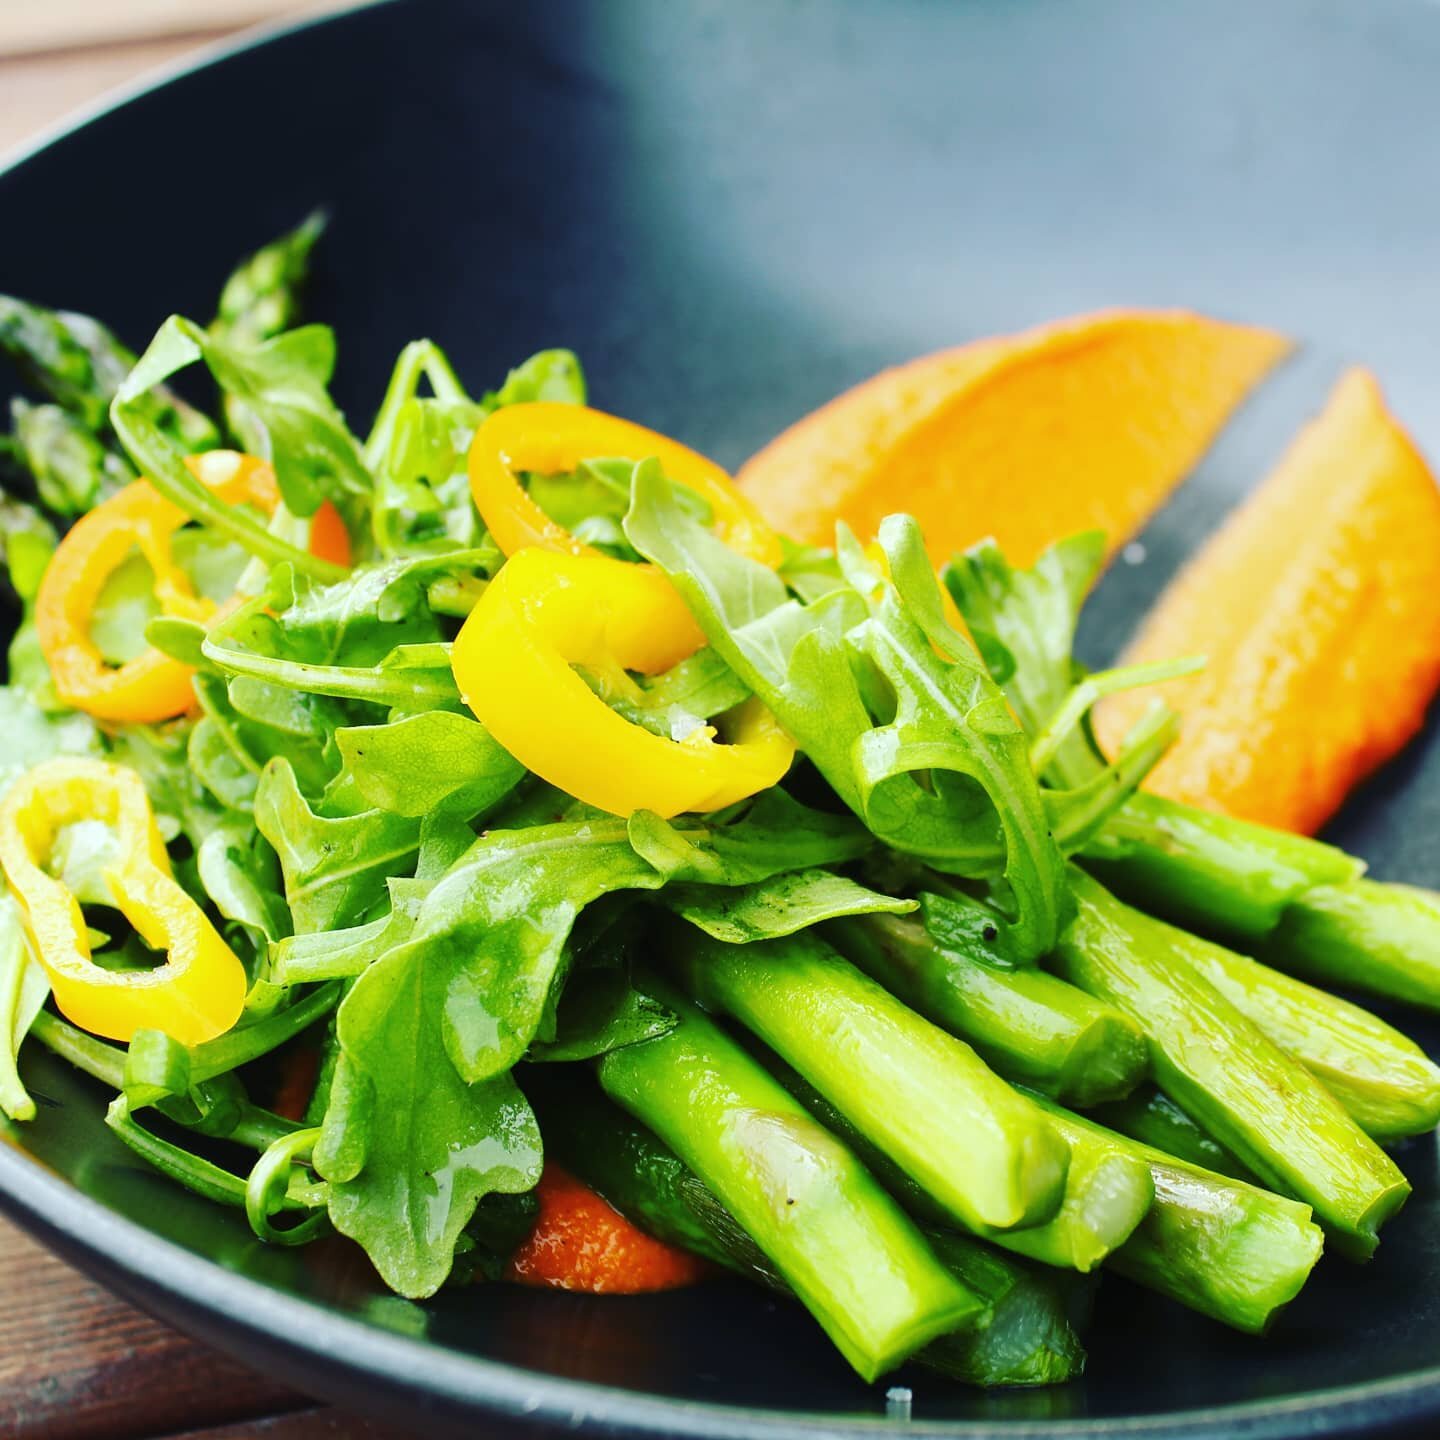 Asparagus! Roasted asparagus, romesco, arugula salad, pickled sweet peppers, olive oil. 

#asparagus #glutenfree #vegan #eatwell #edmondswa #foodgram